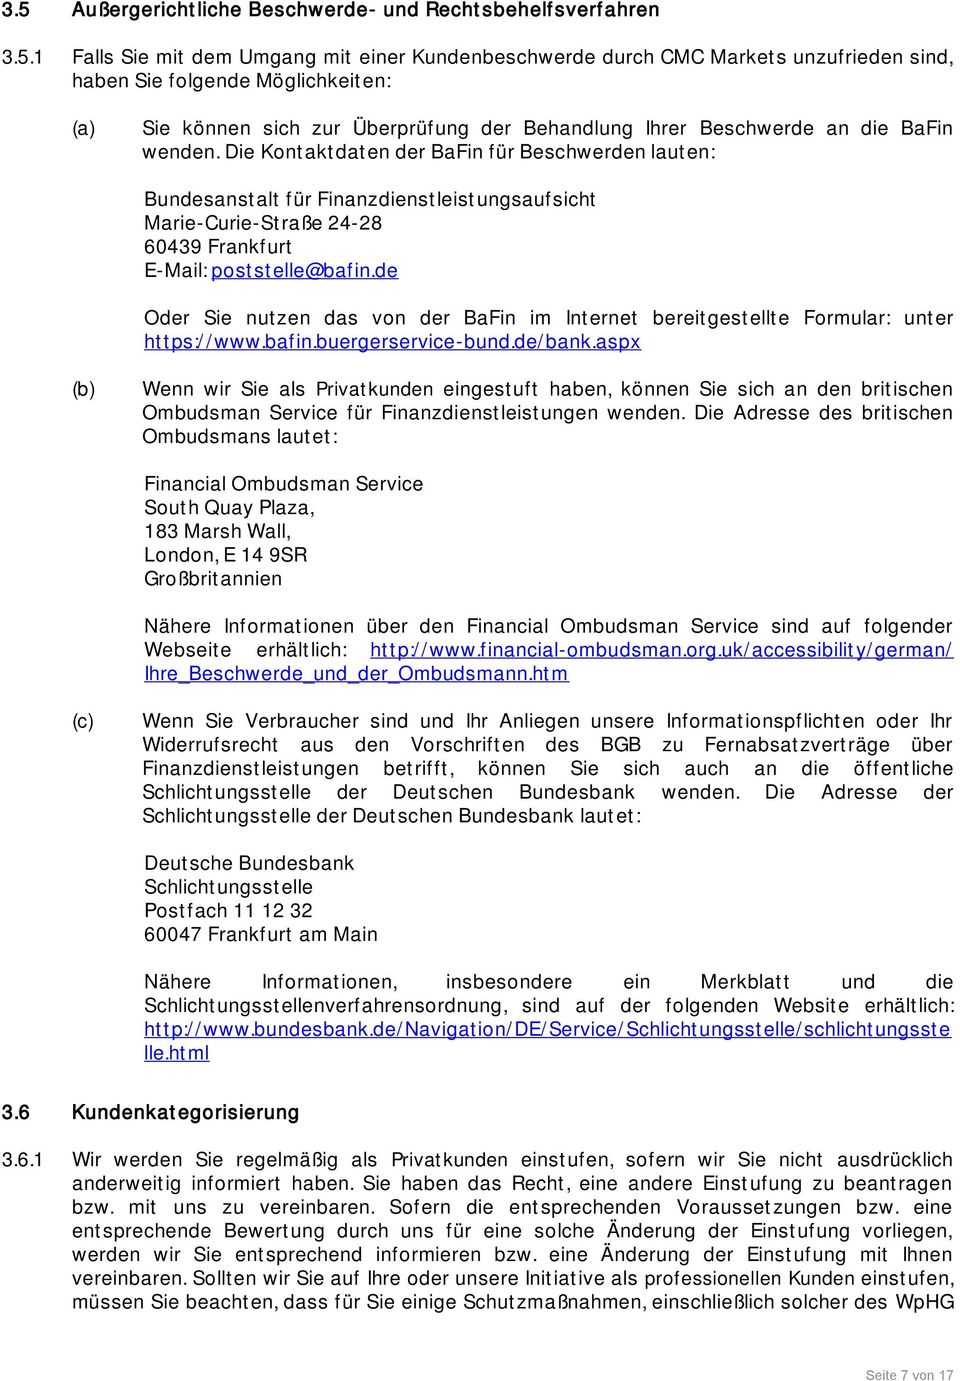 Die Kontaktdaten der BaFin für Beschwerden lauten: Bundesanstalt für Finanzdienstleistungsaufsicht Marie-Curie-Straße 24-28 60439 Frankfurt E-Mail: poststelle@bafin.